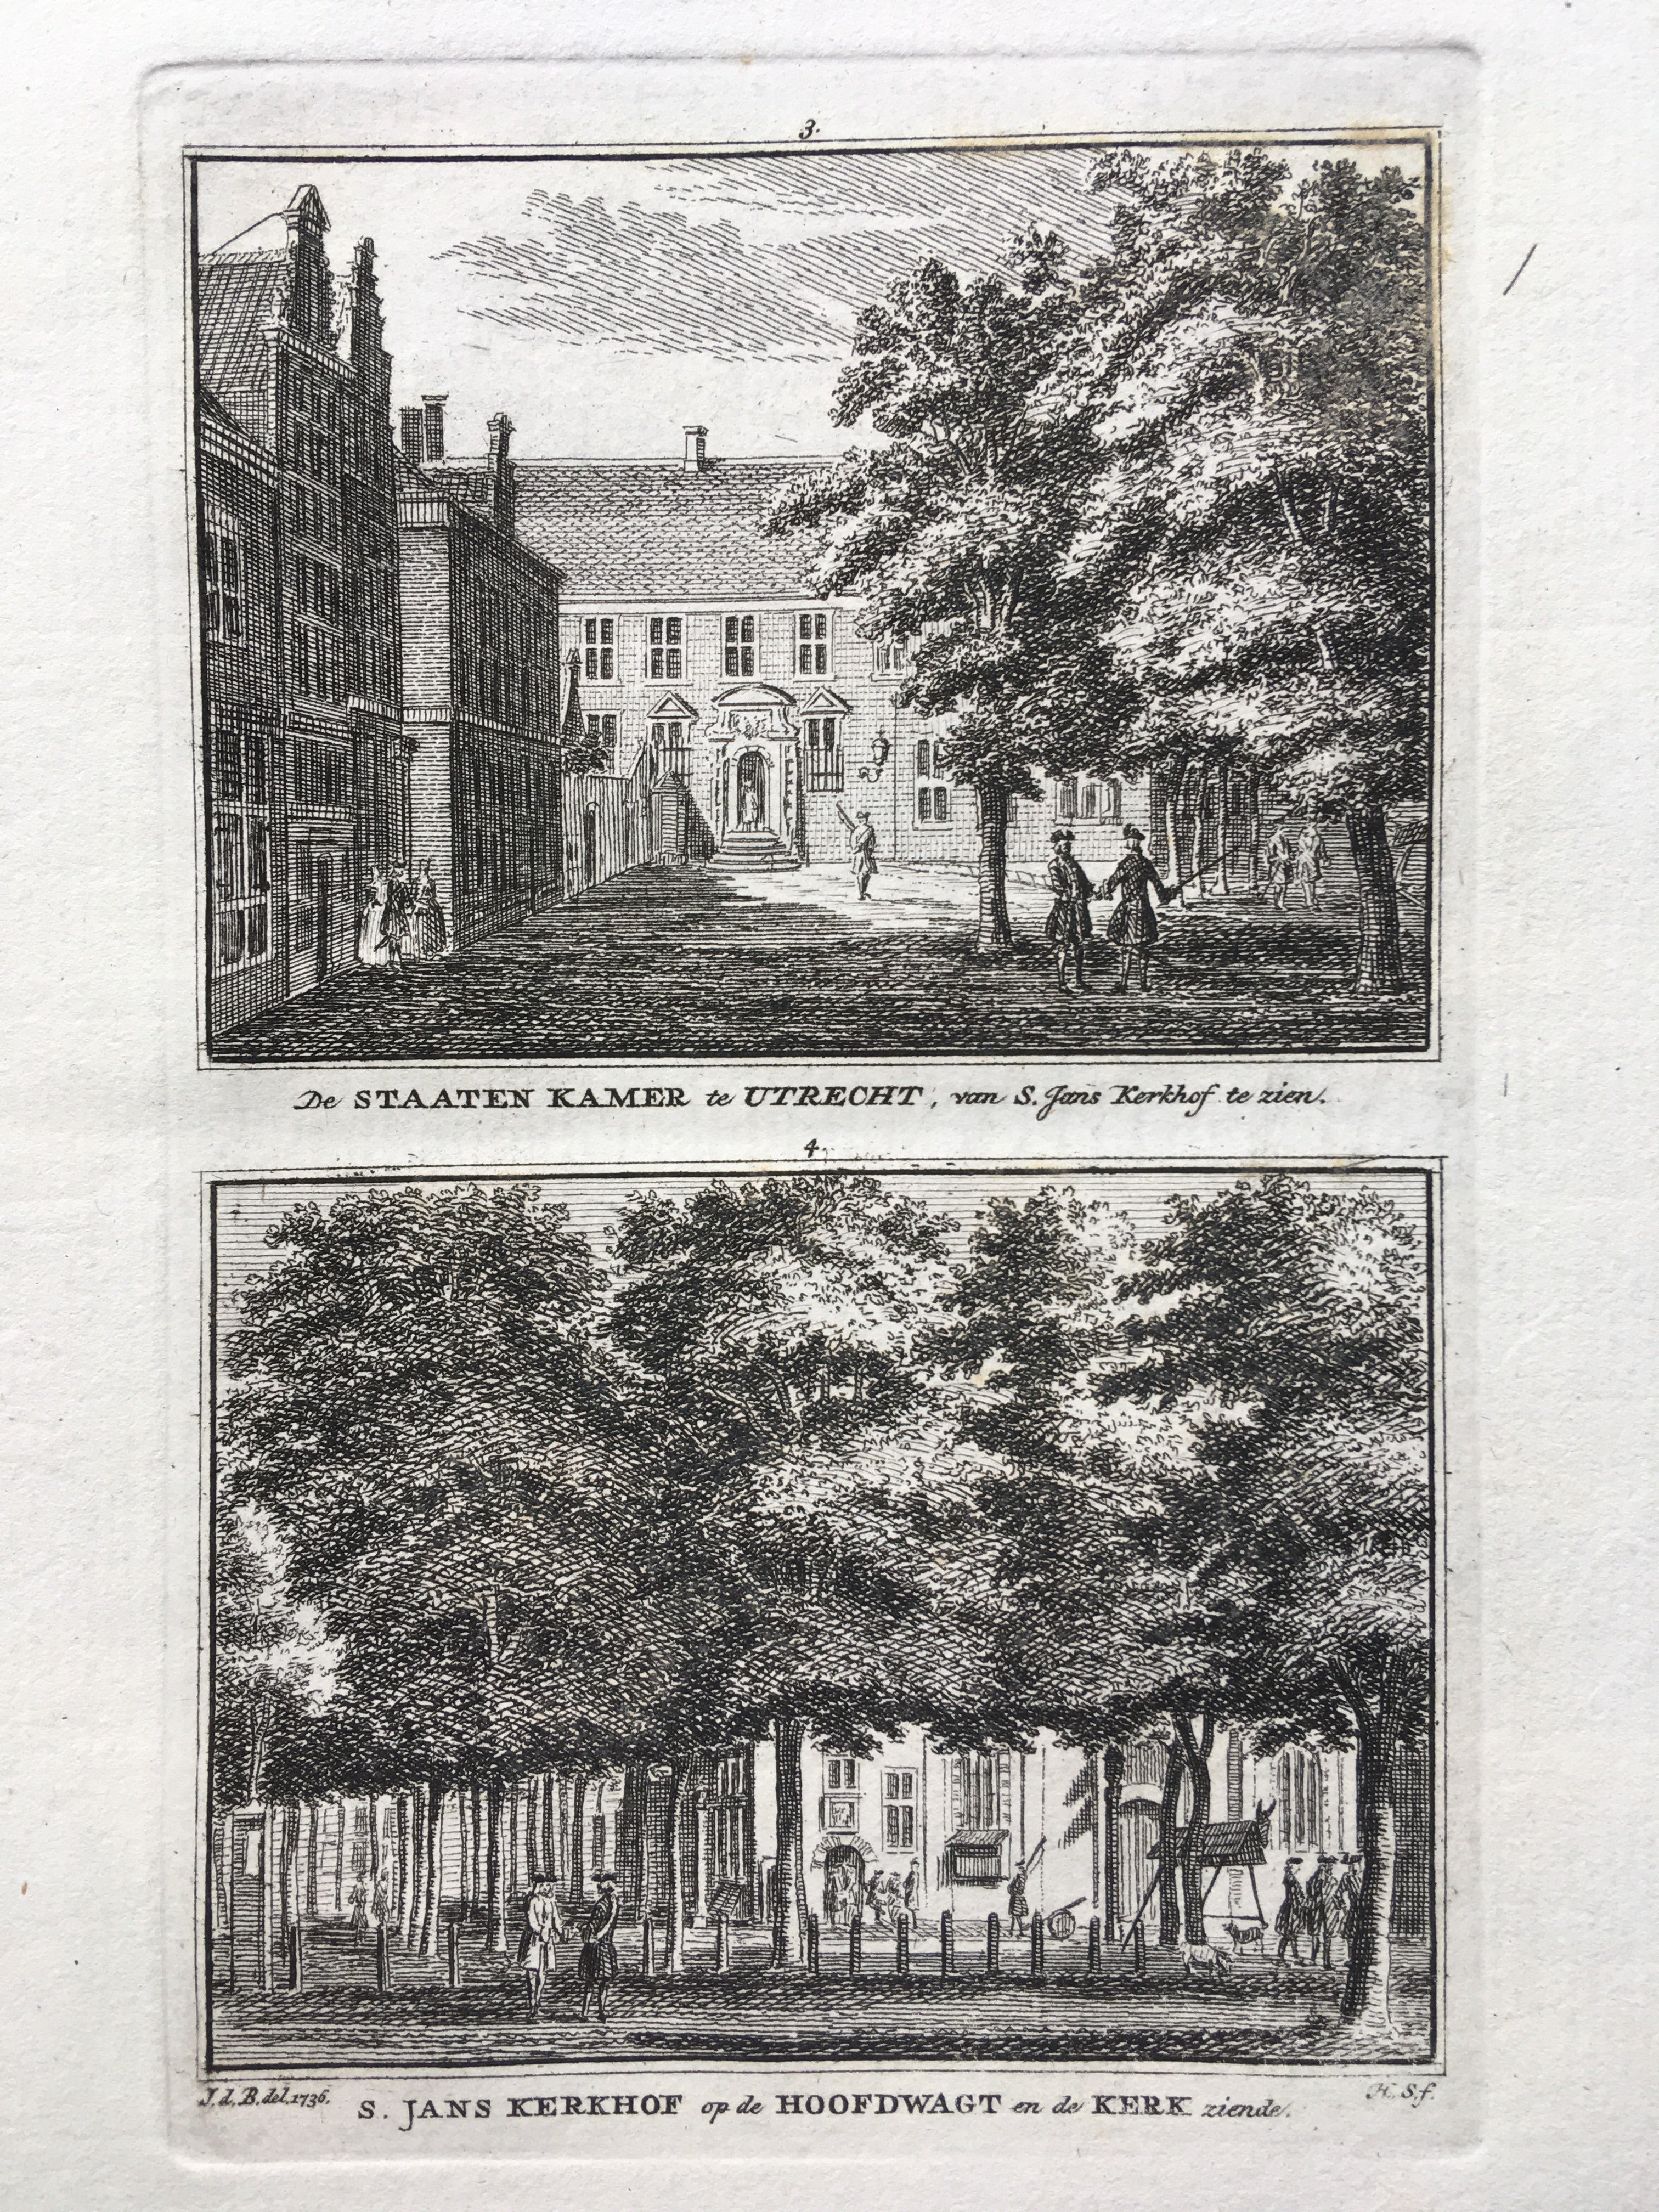 De Statenkamer, en de Janskerk met de Hoofdwacht - ca. 1750